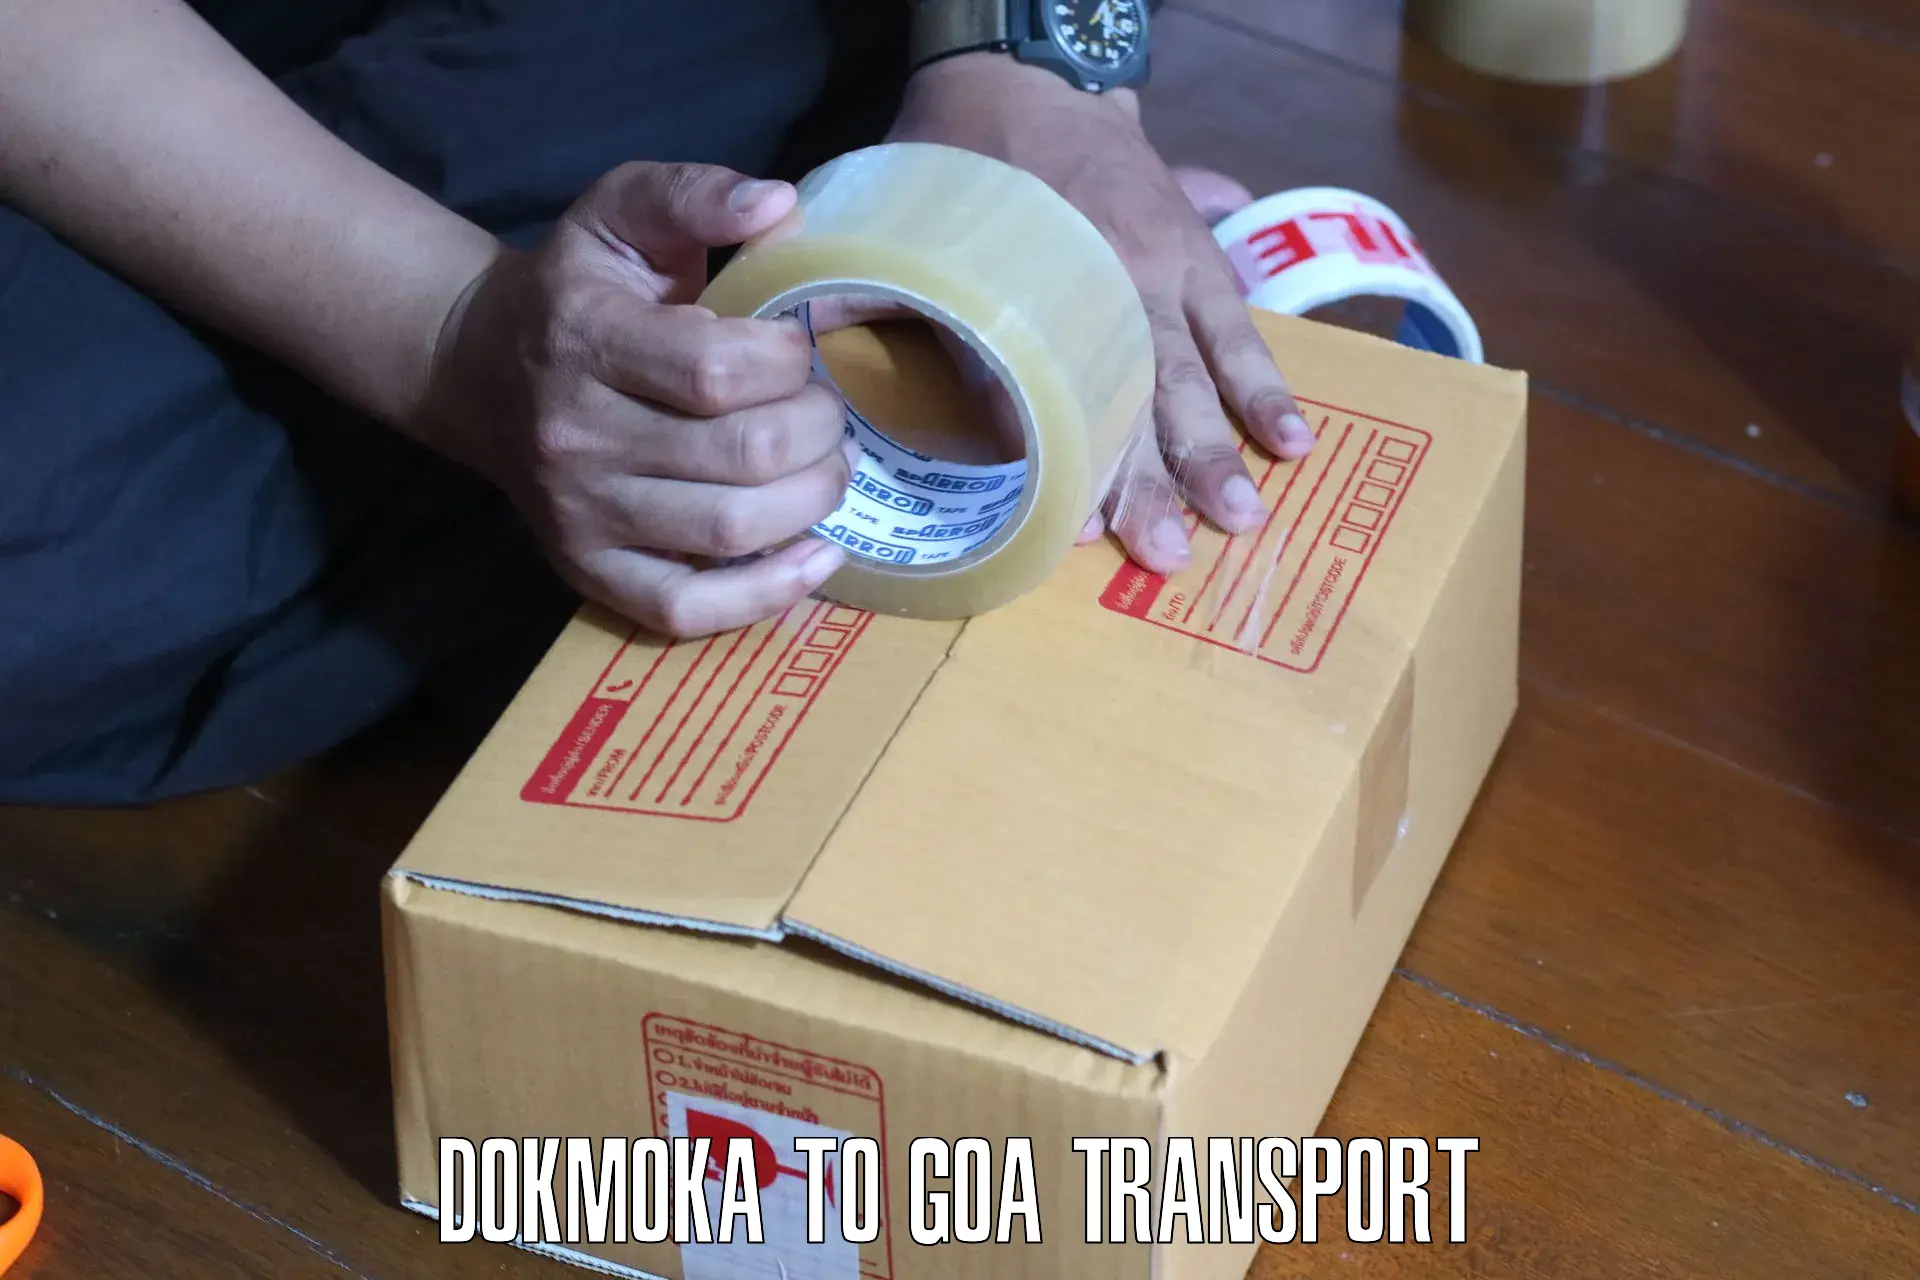 Two wheeler transport services Dokmoka to NIT Goa